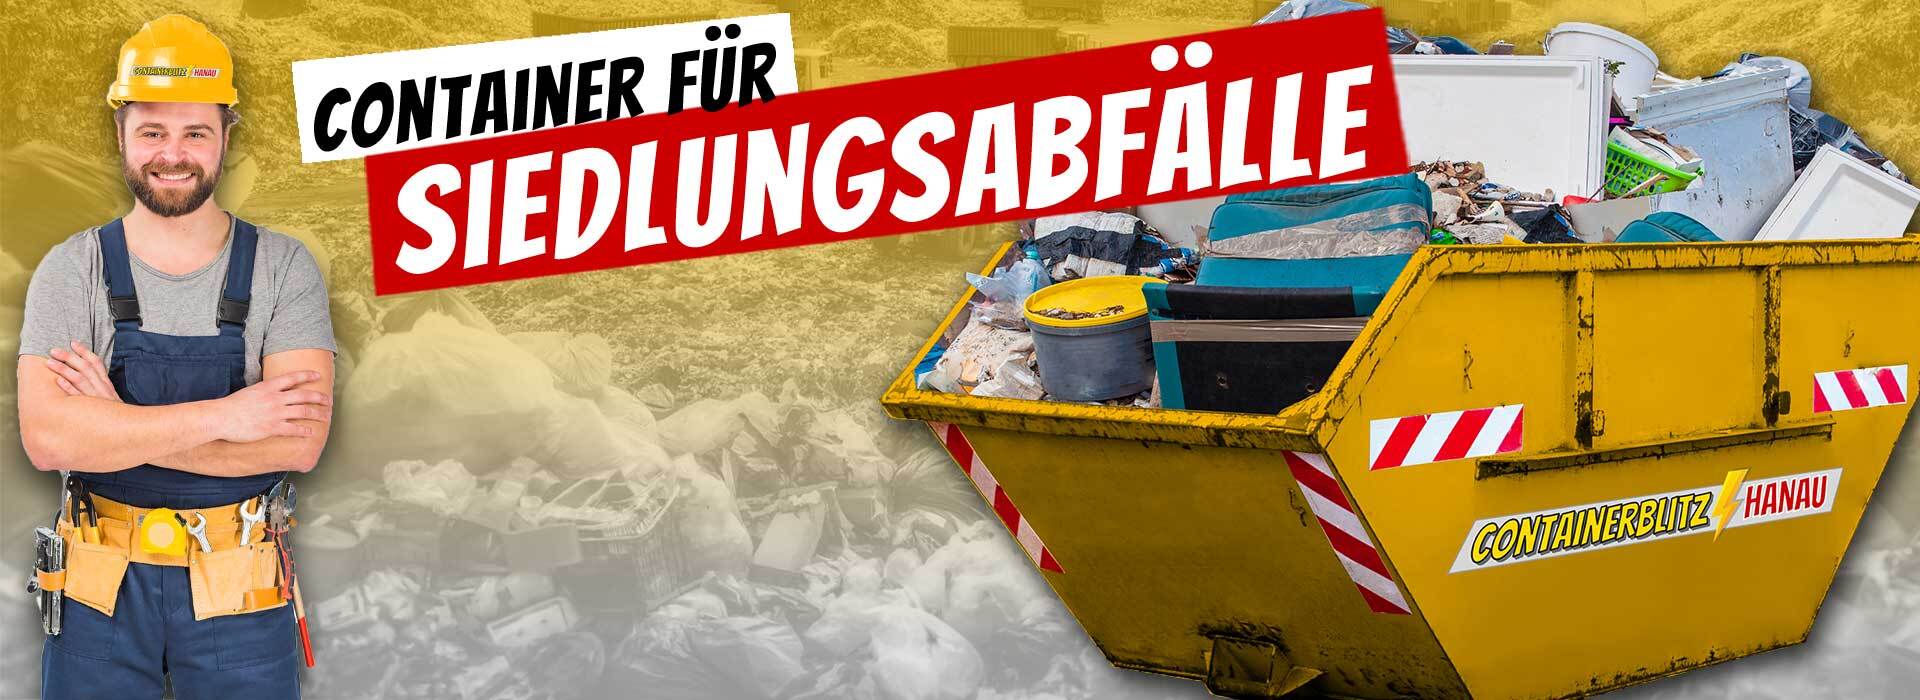 Container voll mit Siedlungsabfällen zur Entsorgung in Hanau, geordnet und sauber